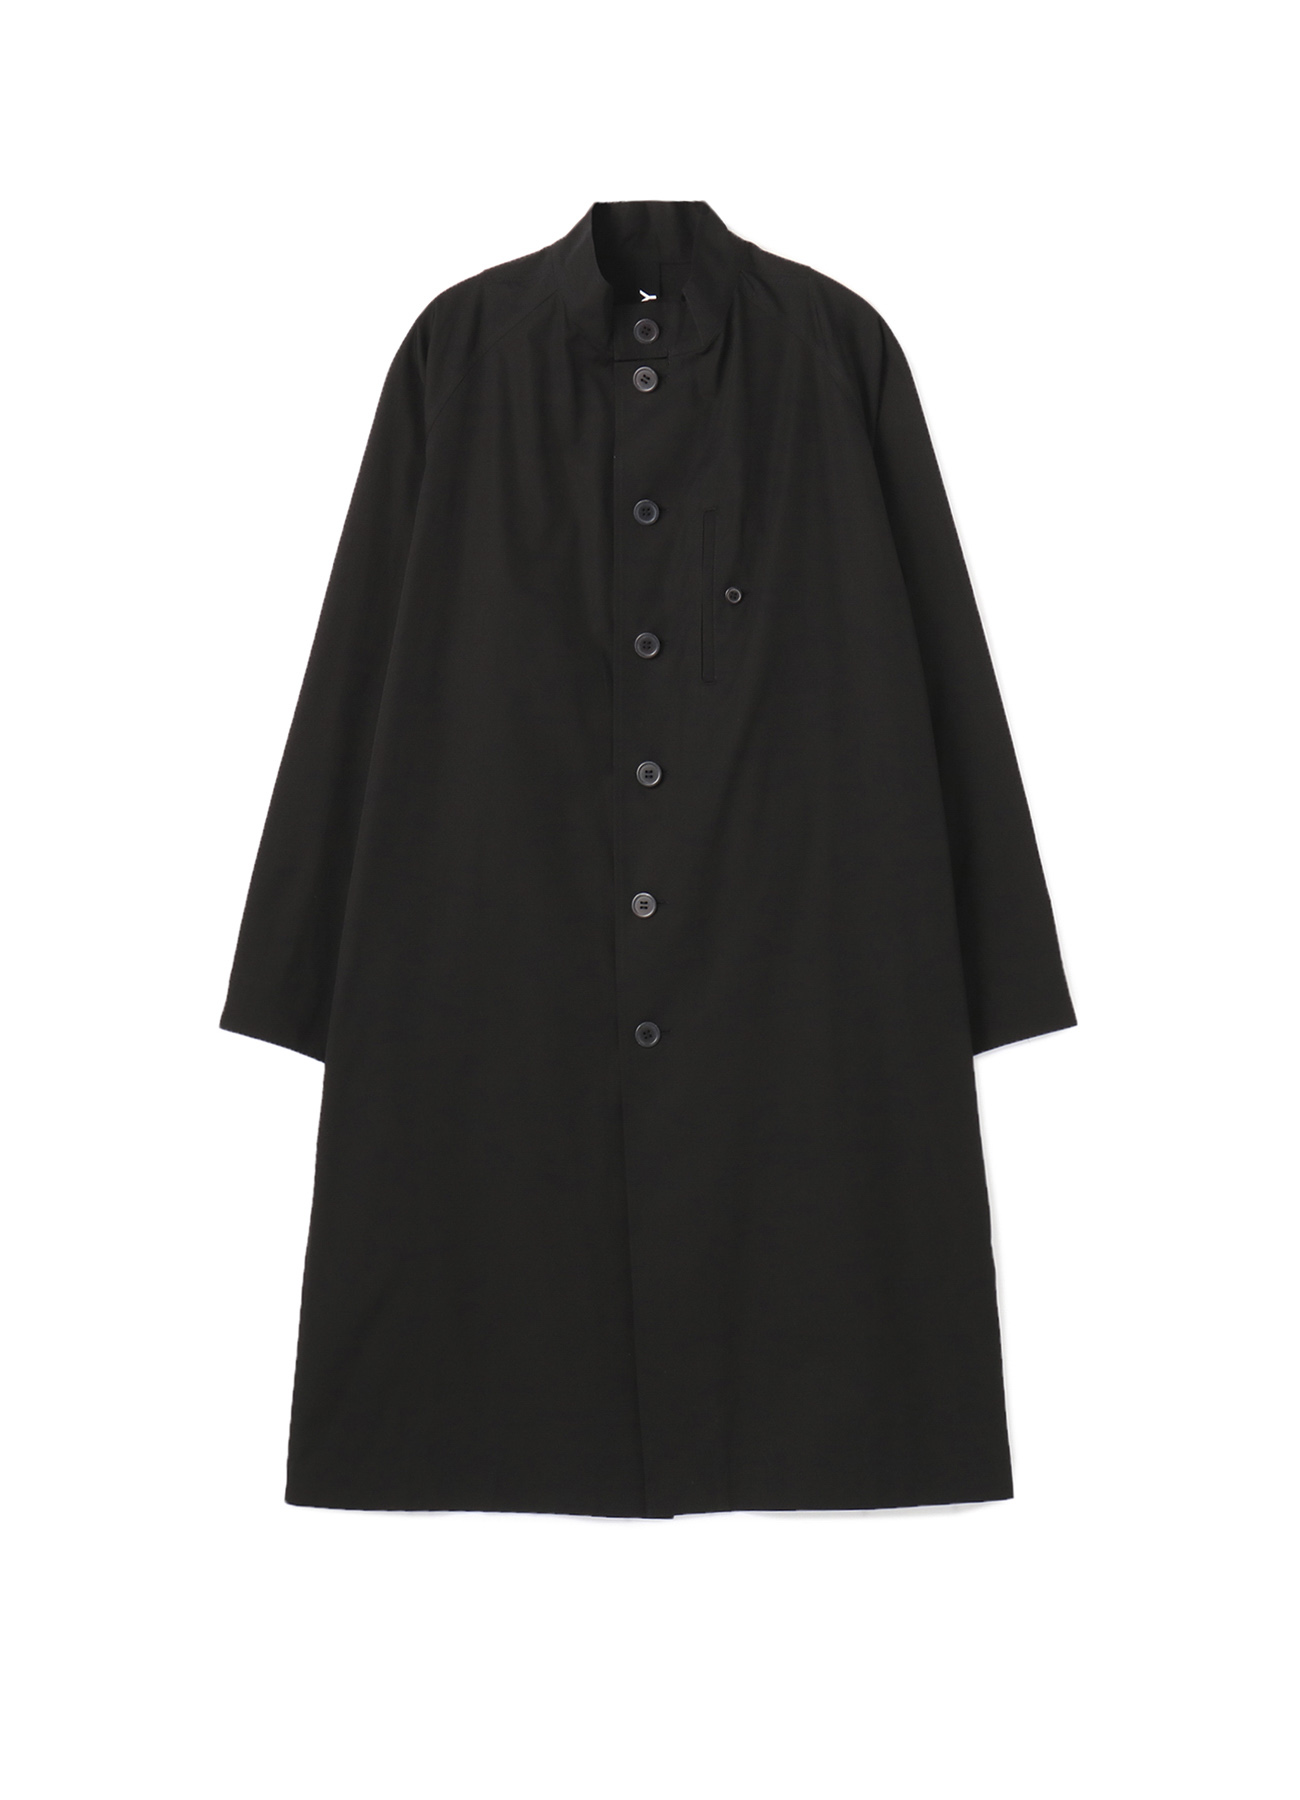 100/2 cotton broad Big shirt coat